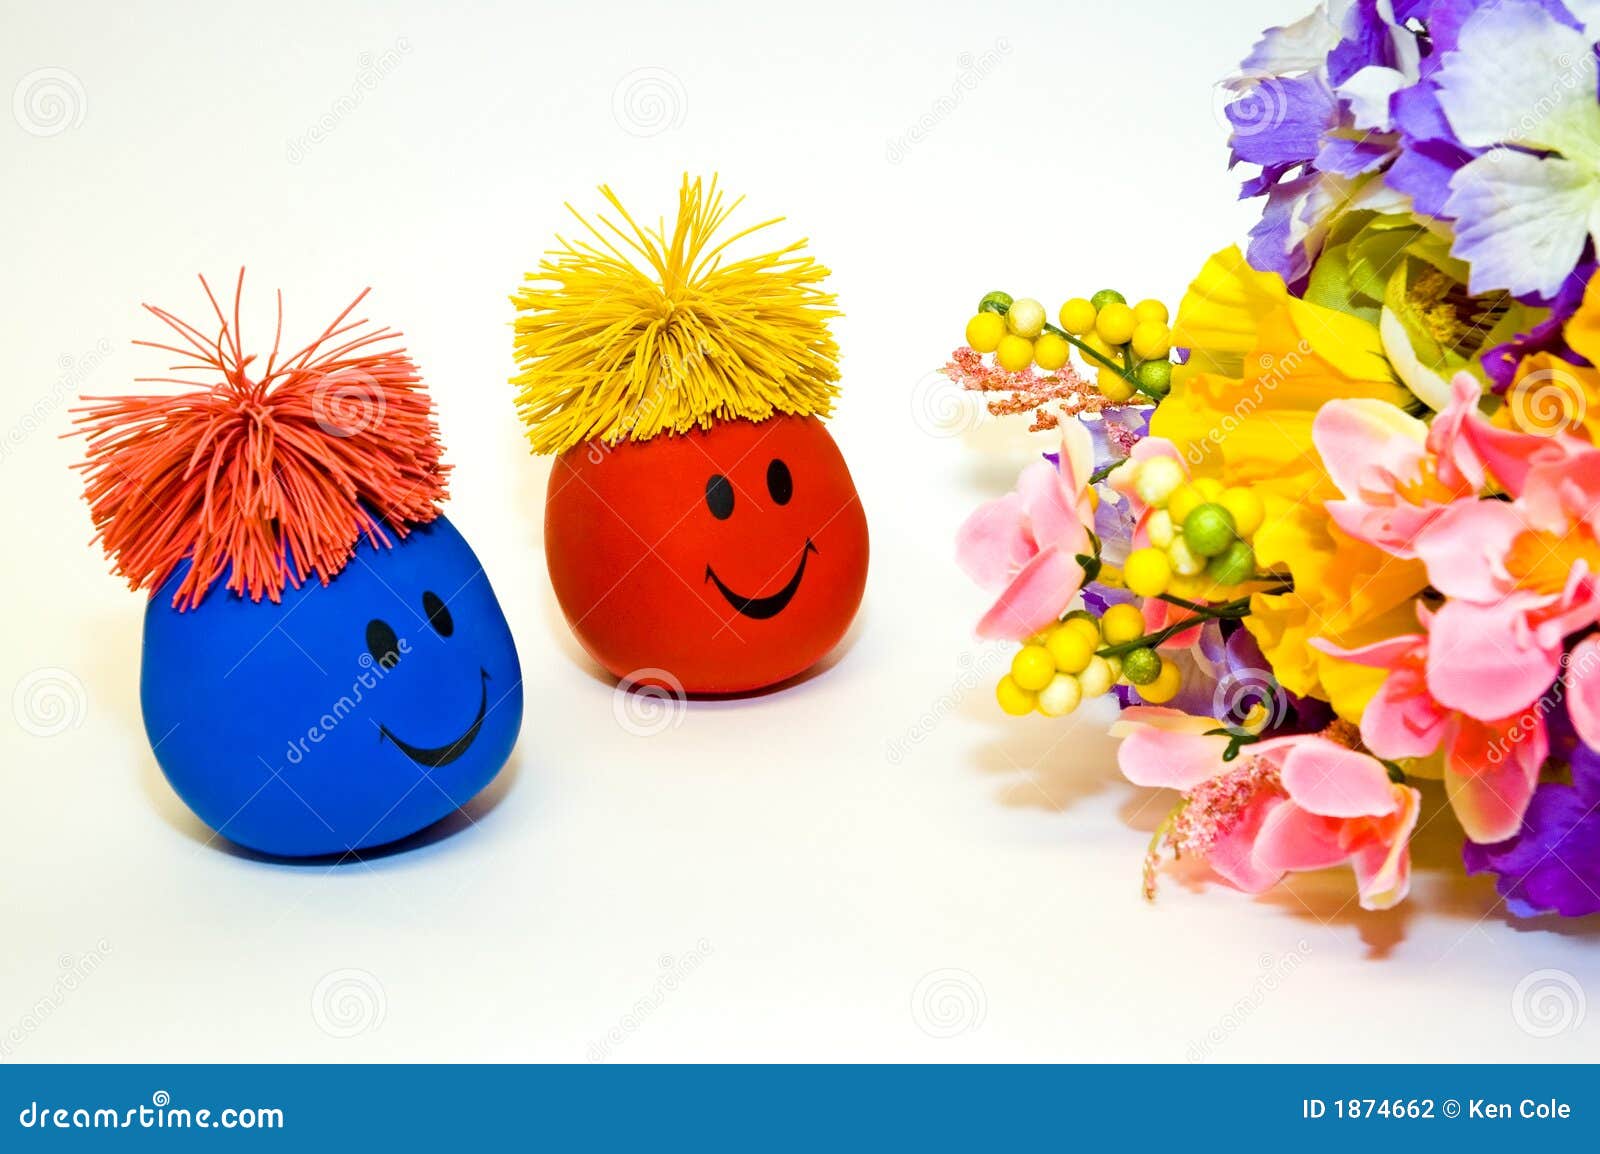 Blumenstrauß smiley mit Smiley Face